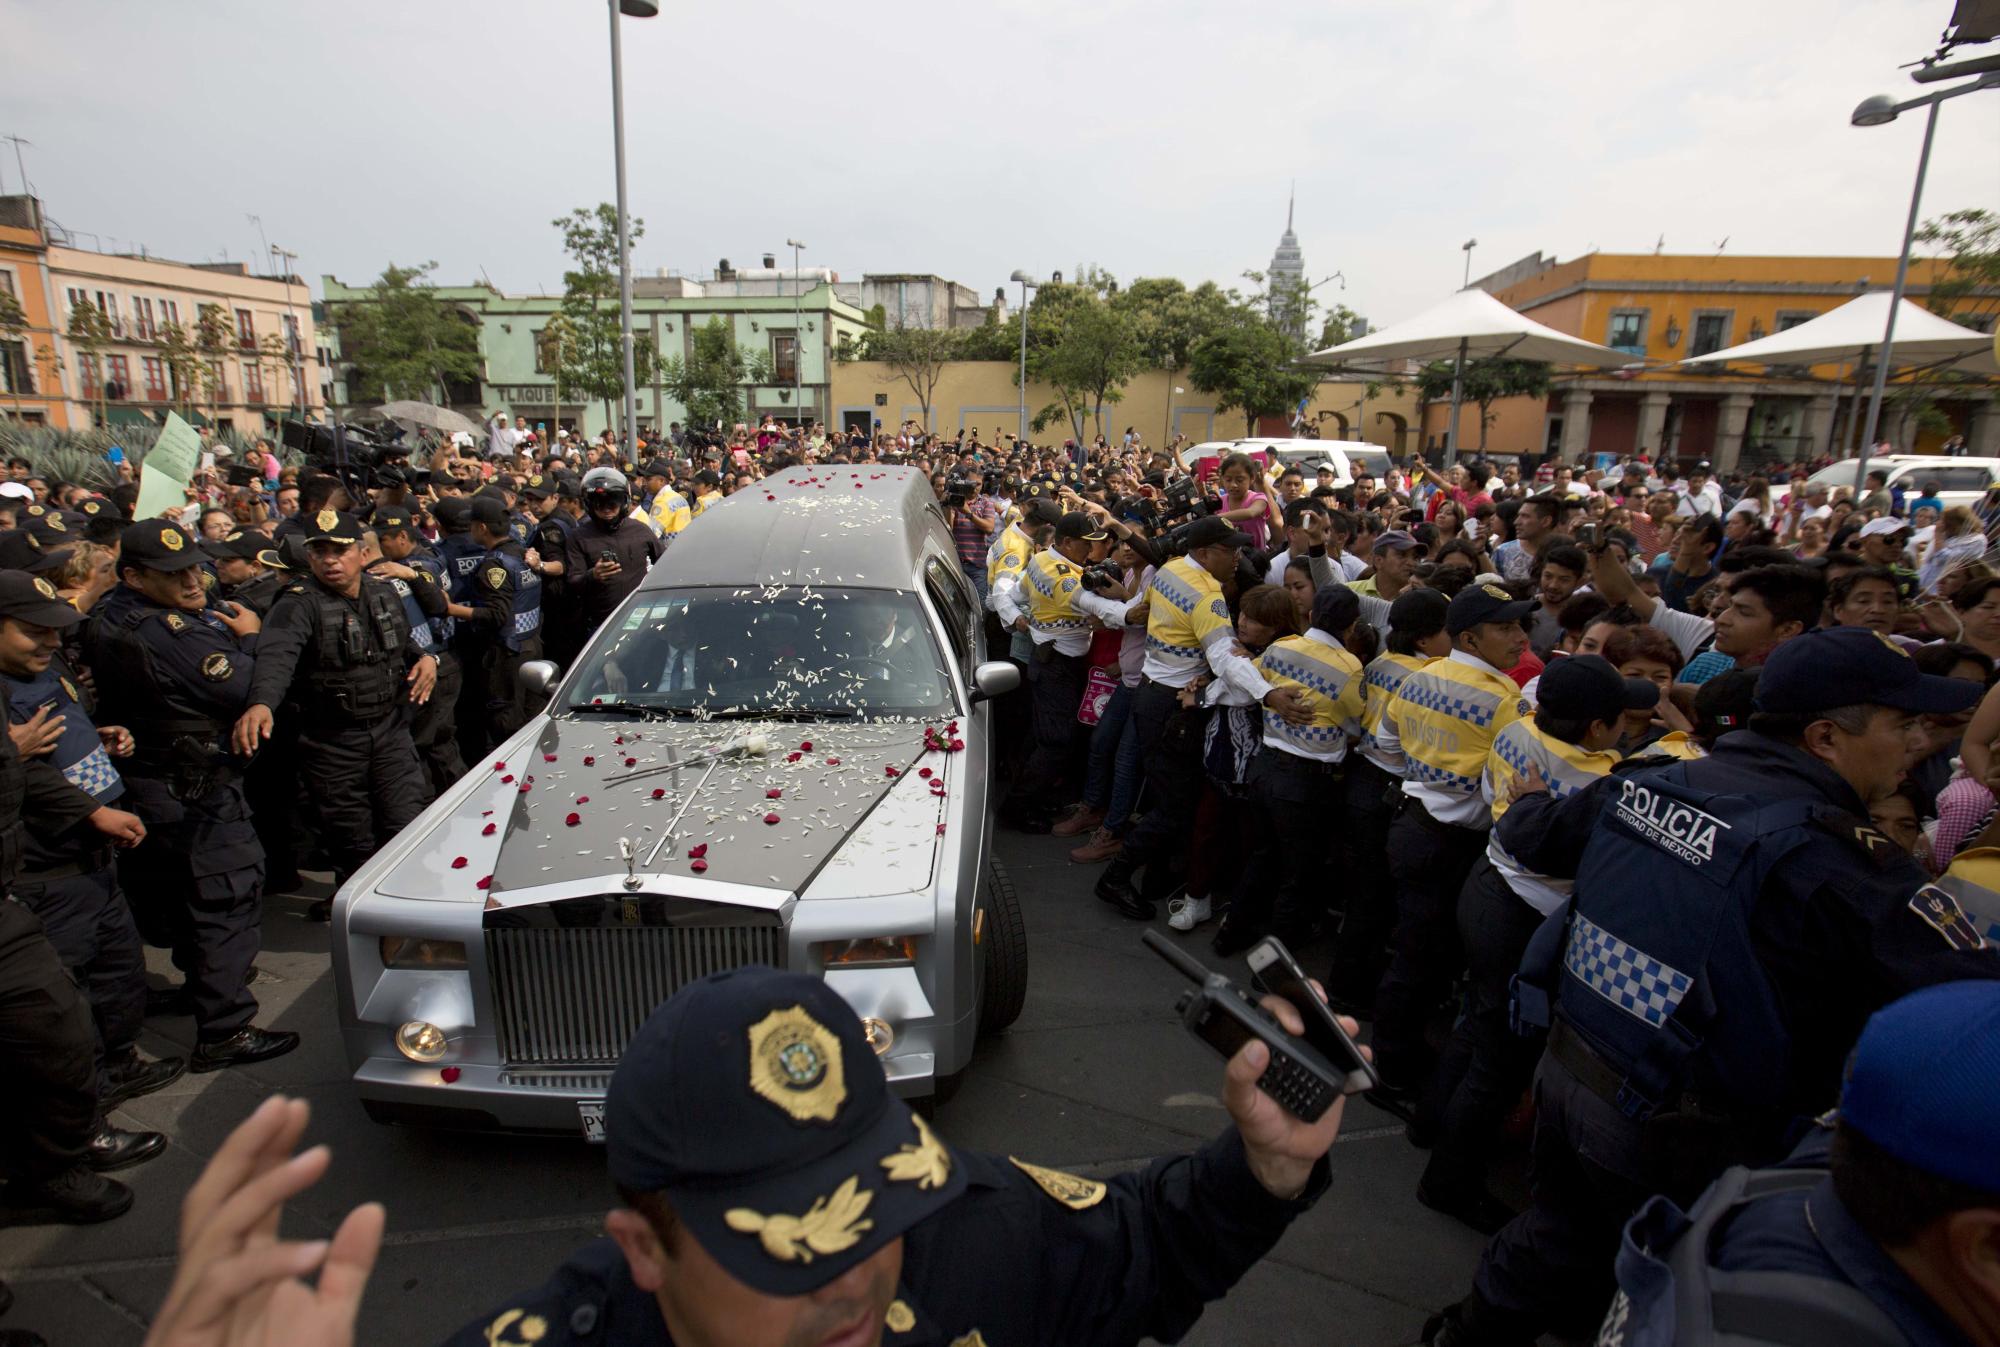 Una carroza fúnebre con los restos del cantante mexicano Joan Sebastian recorre la Plaza Garibaldi durante una procesión funeral en la Ciudad de México, el jueves 16 de julio del 2015. El músico murió el lunes tras una larga lucha con el cáncer, a los 64 años.